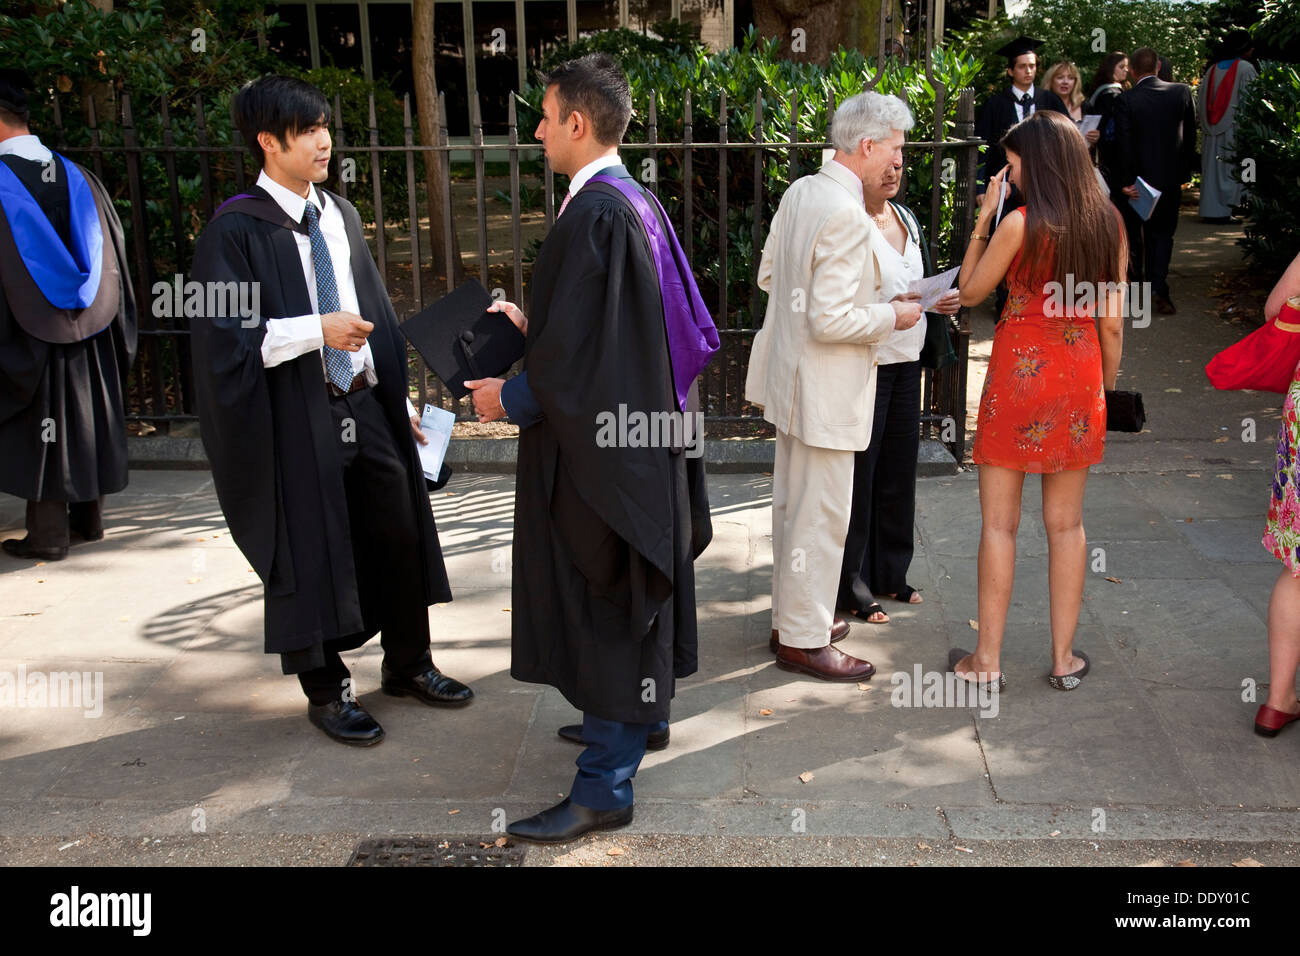 Abschlussfeier für Universitätshochschule London Studenten, Bedford Square, London, England Stockfoto